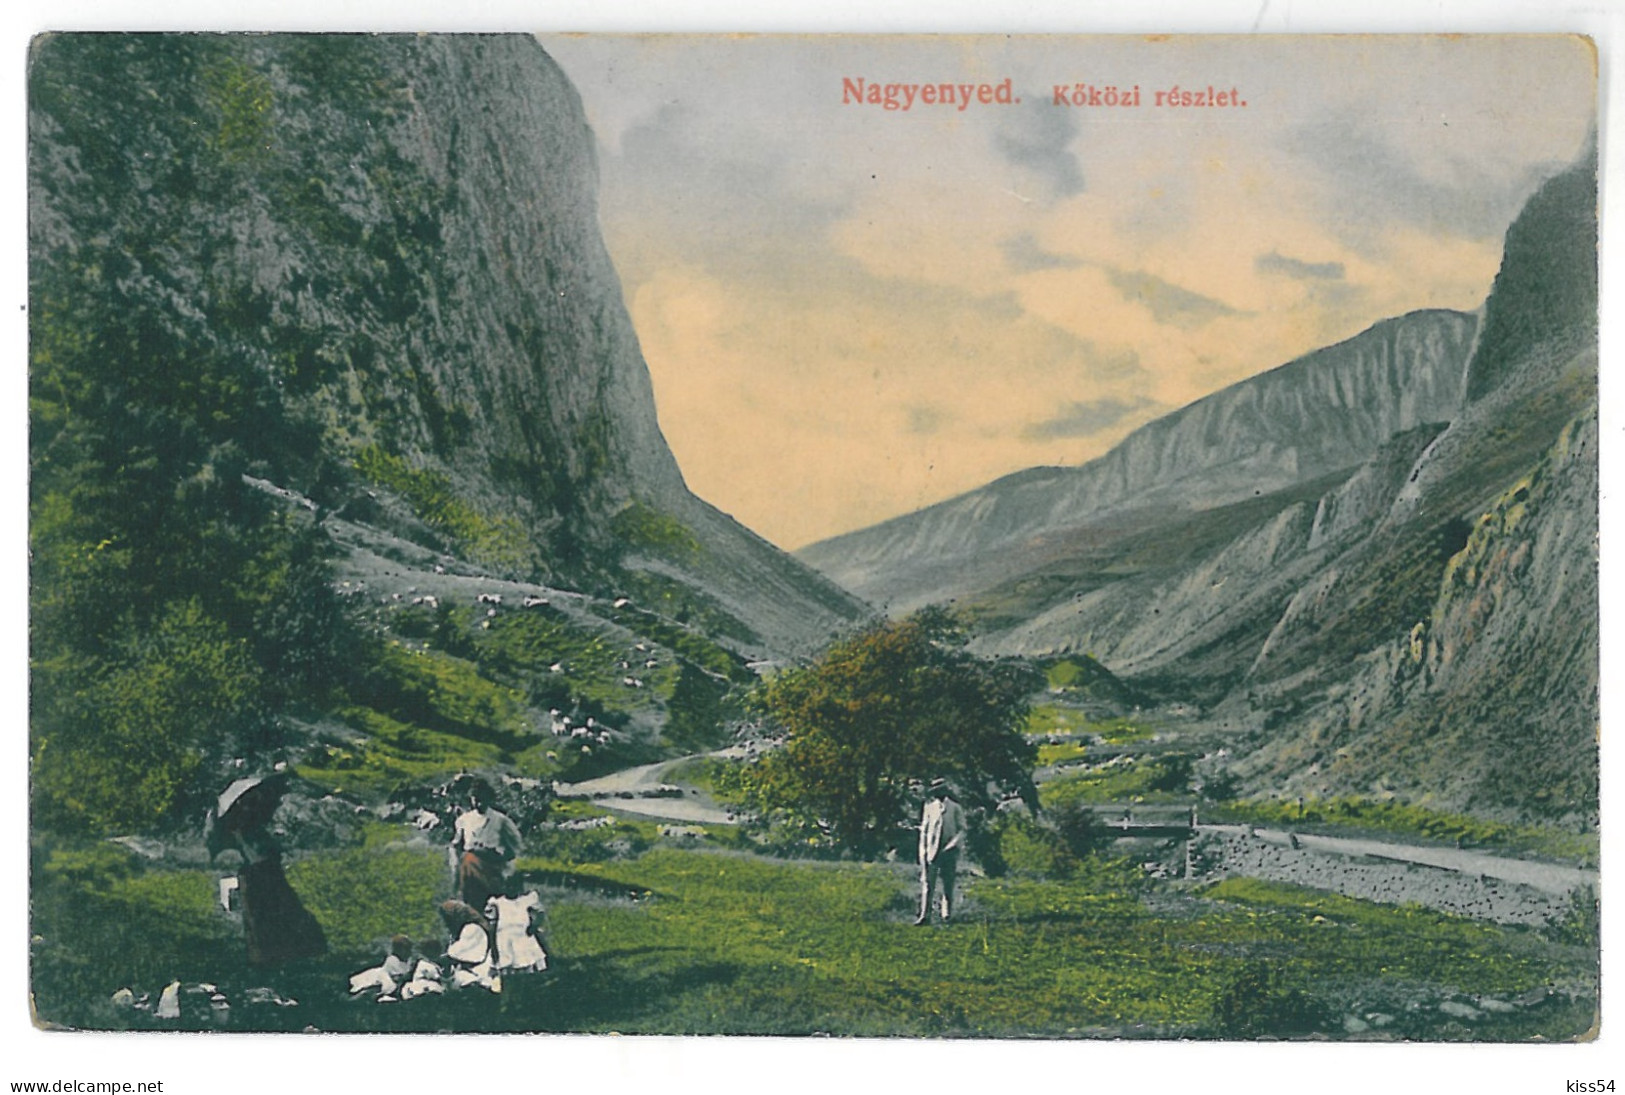 RO 06 - 14945 AIUD, Alba, Romania - Old Postcard - Unused - Rumänien